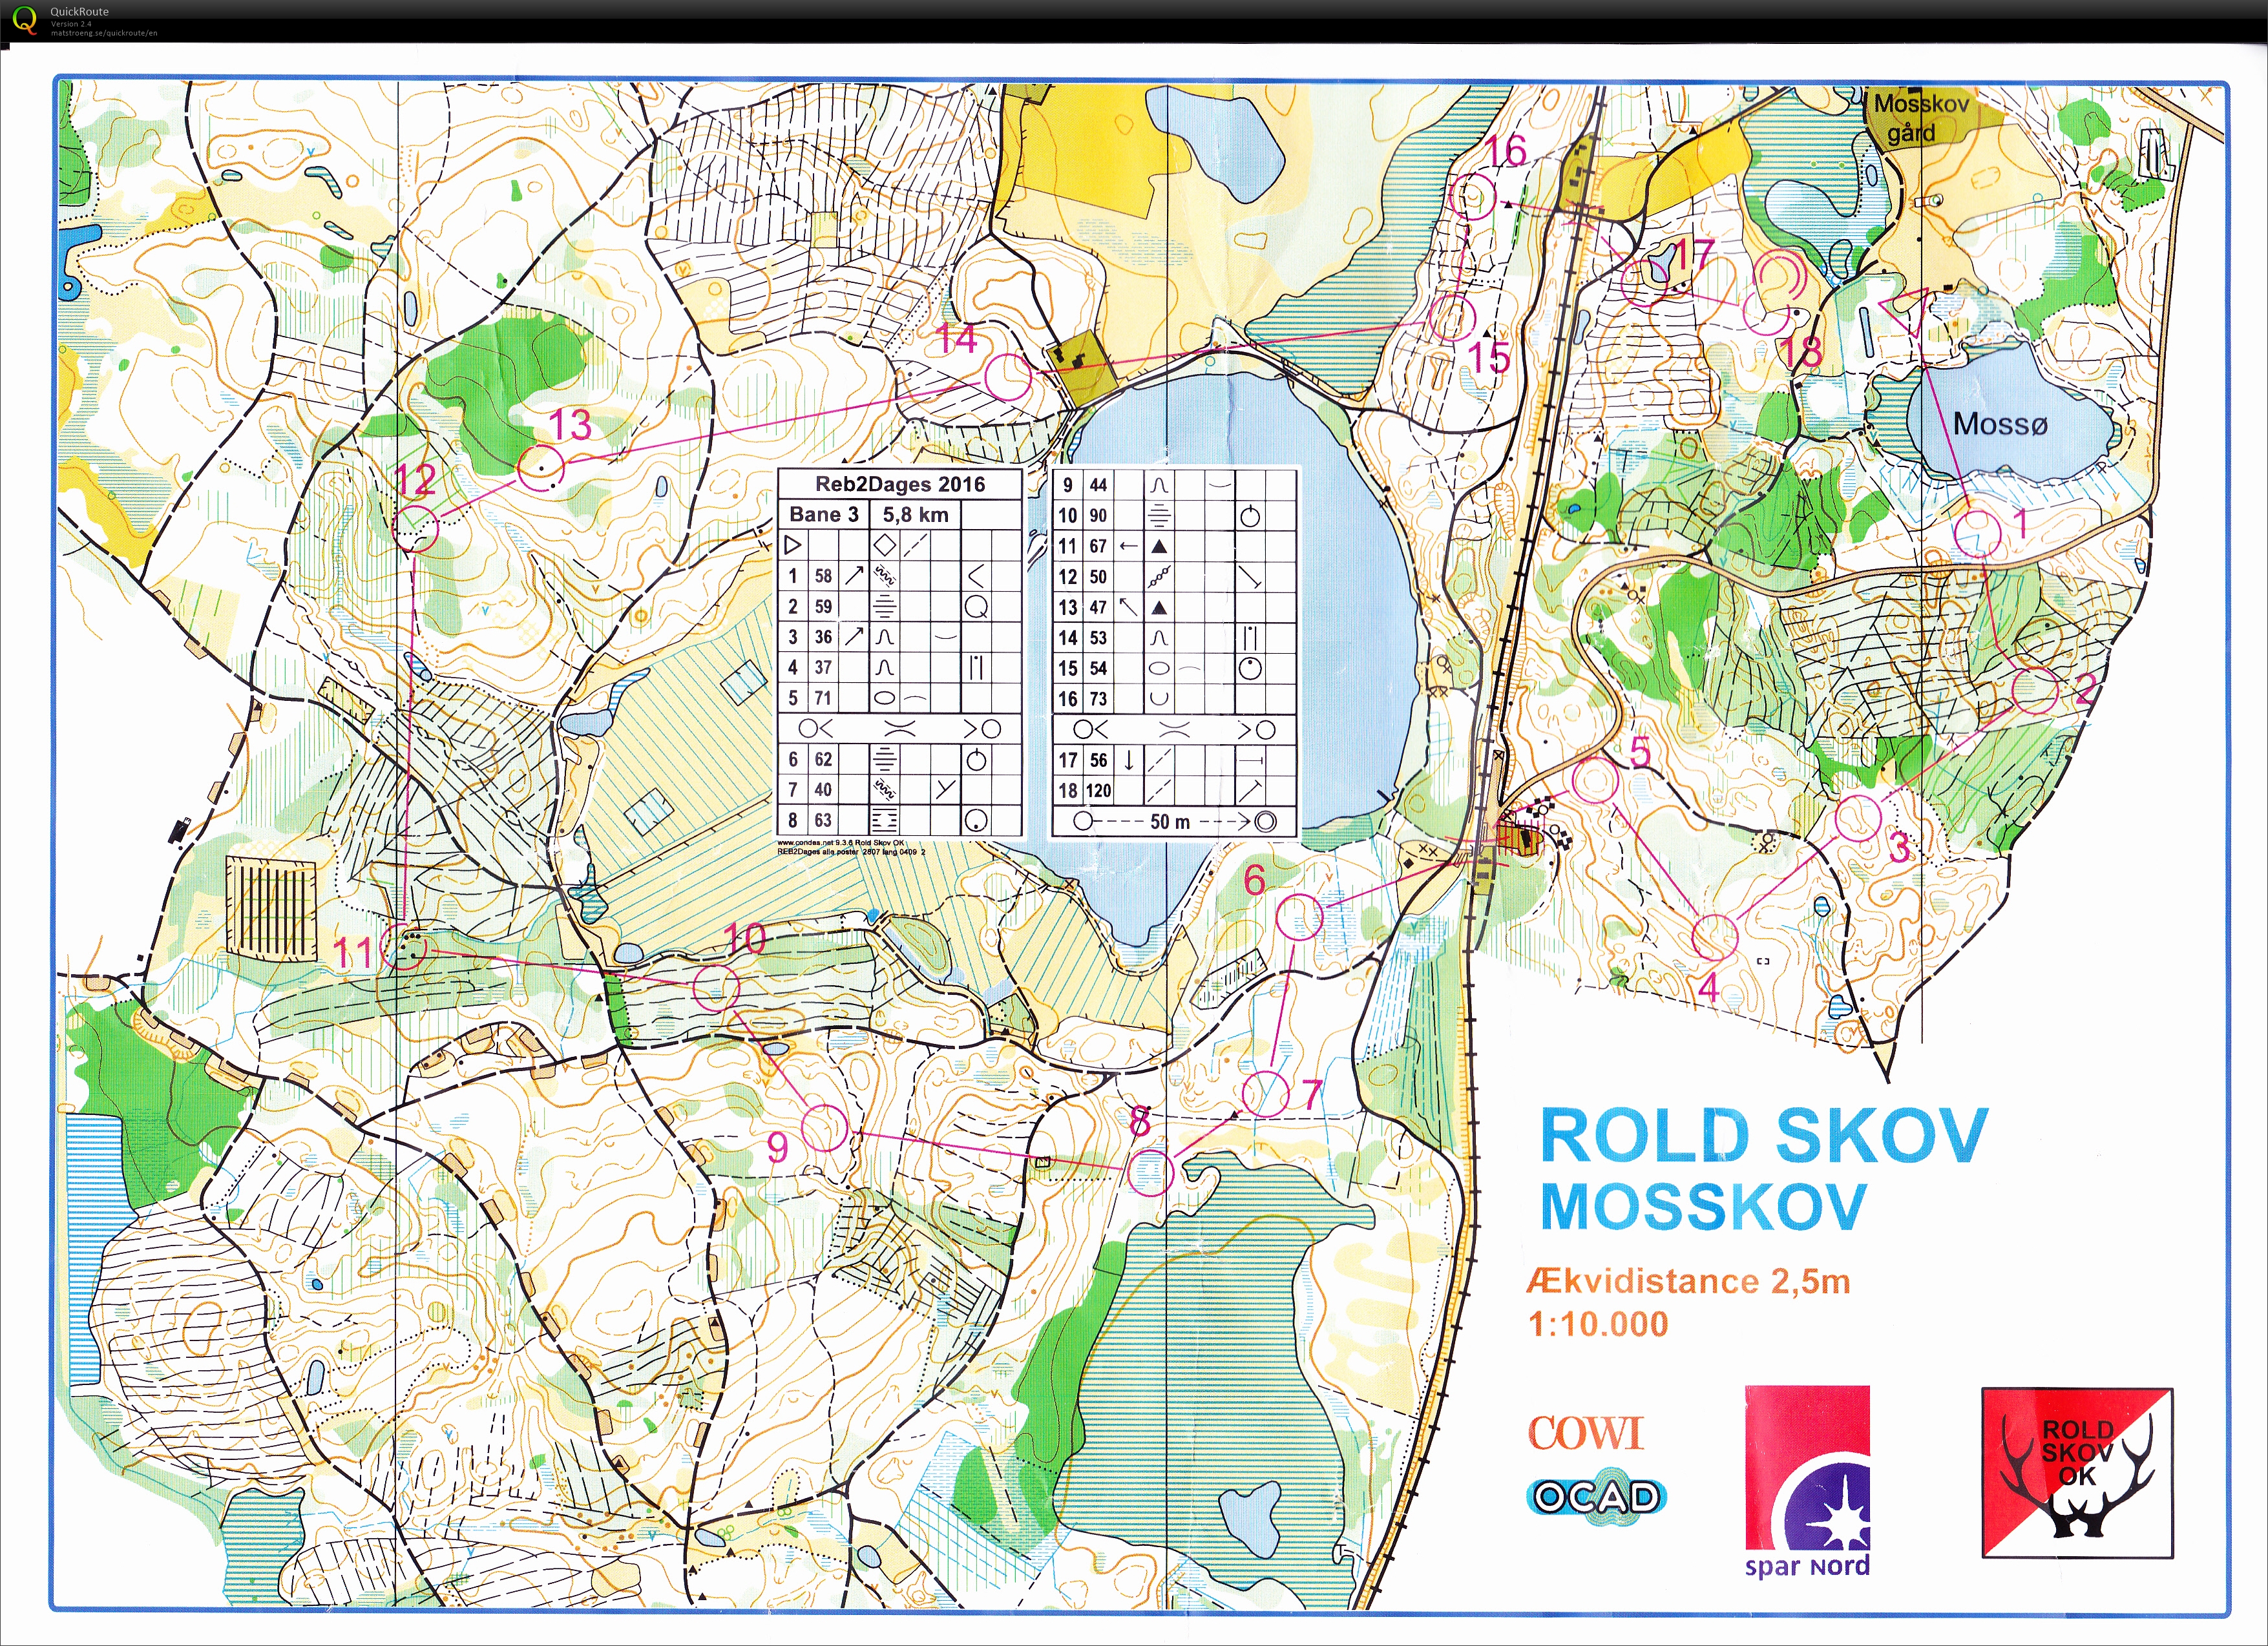 Mosskov Rold div. match (2016-09-25)